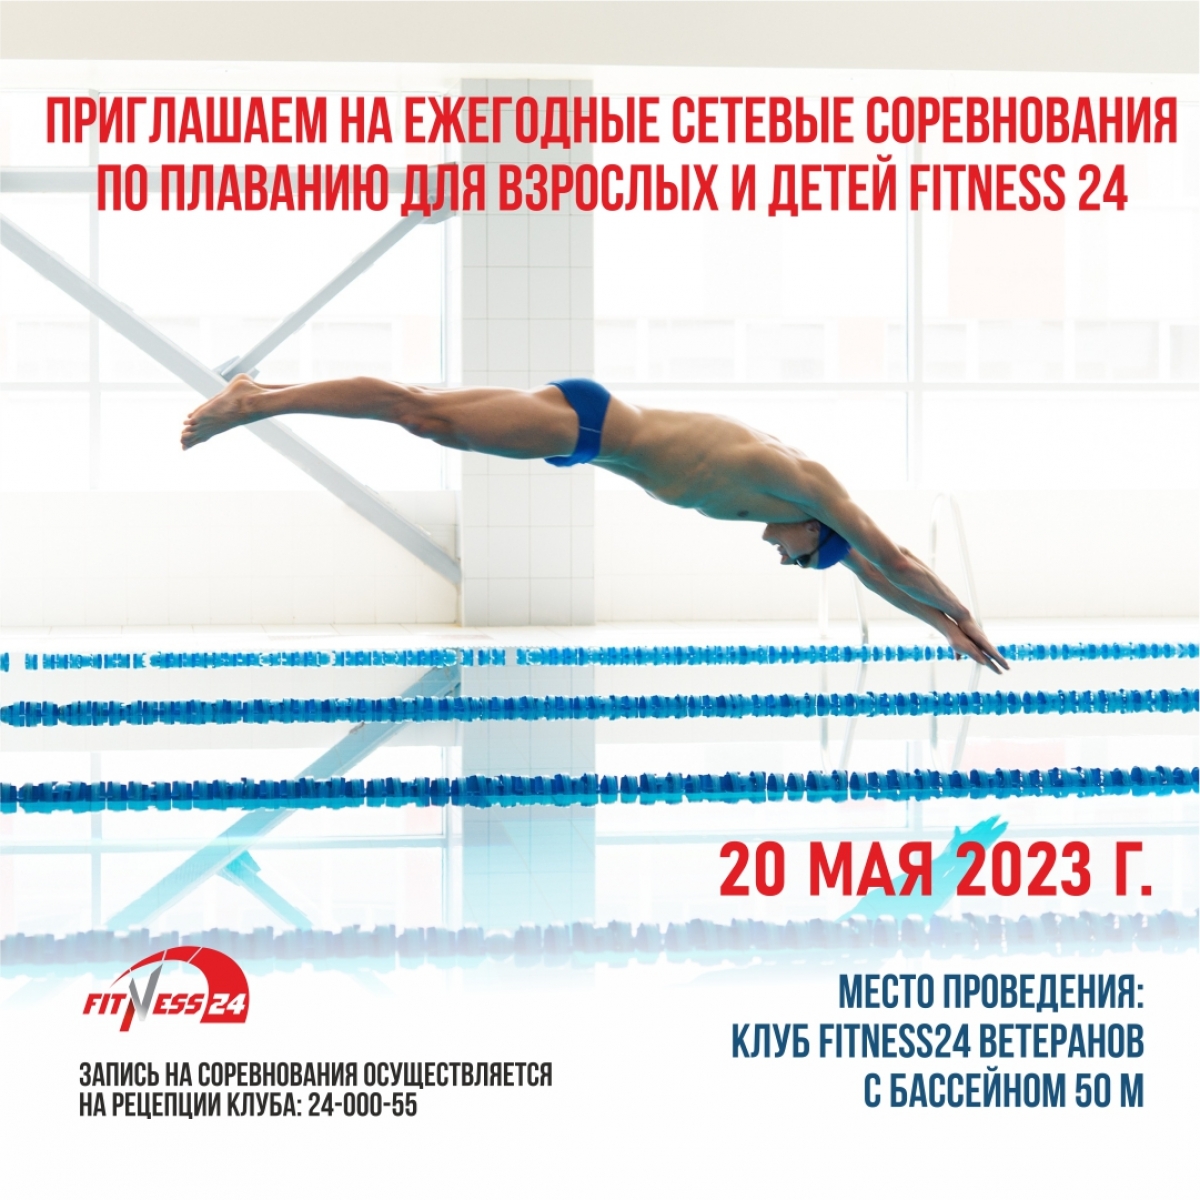 Ежегодные Сетевые соревнования по плаванию для взрослых и детей